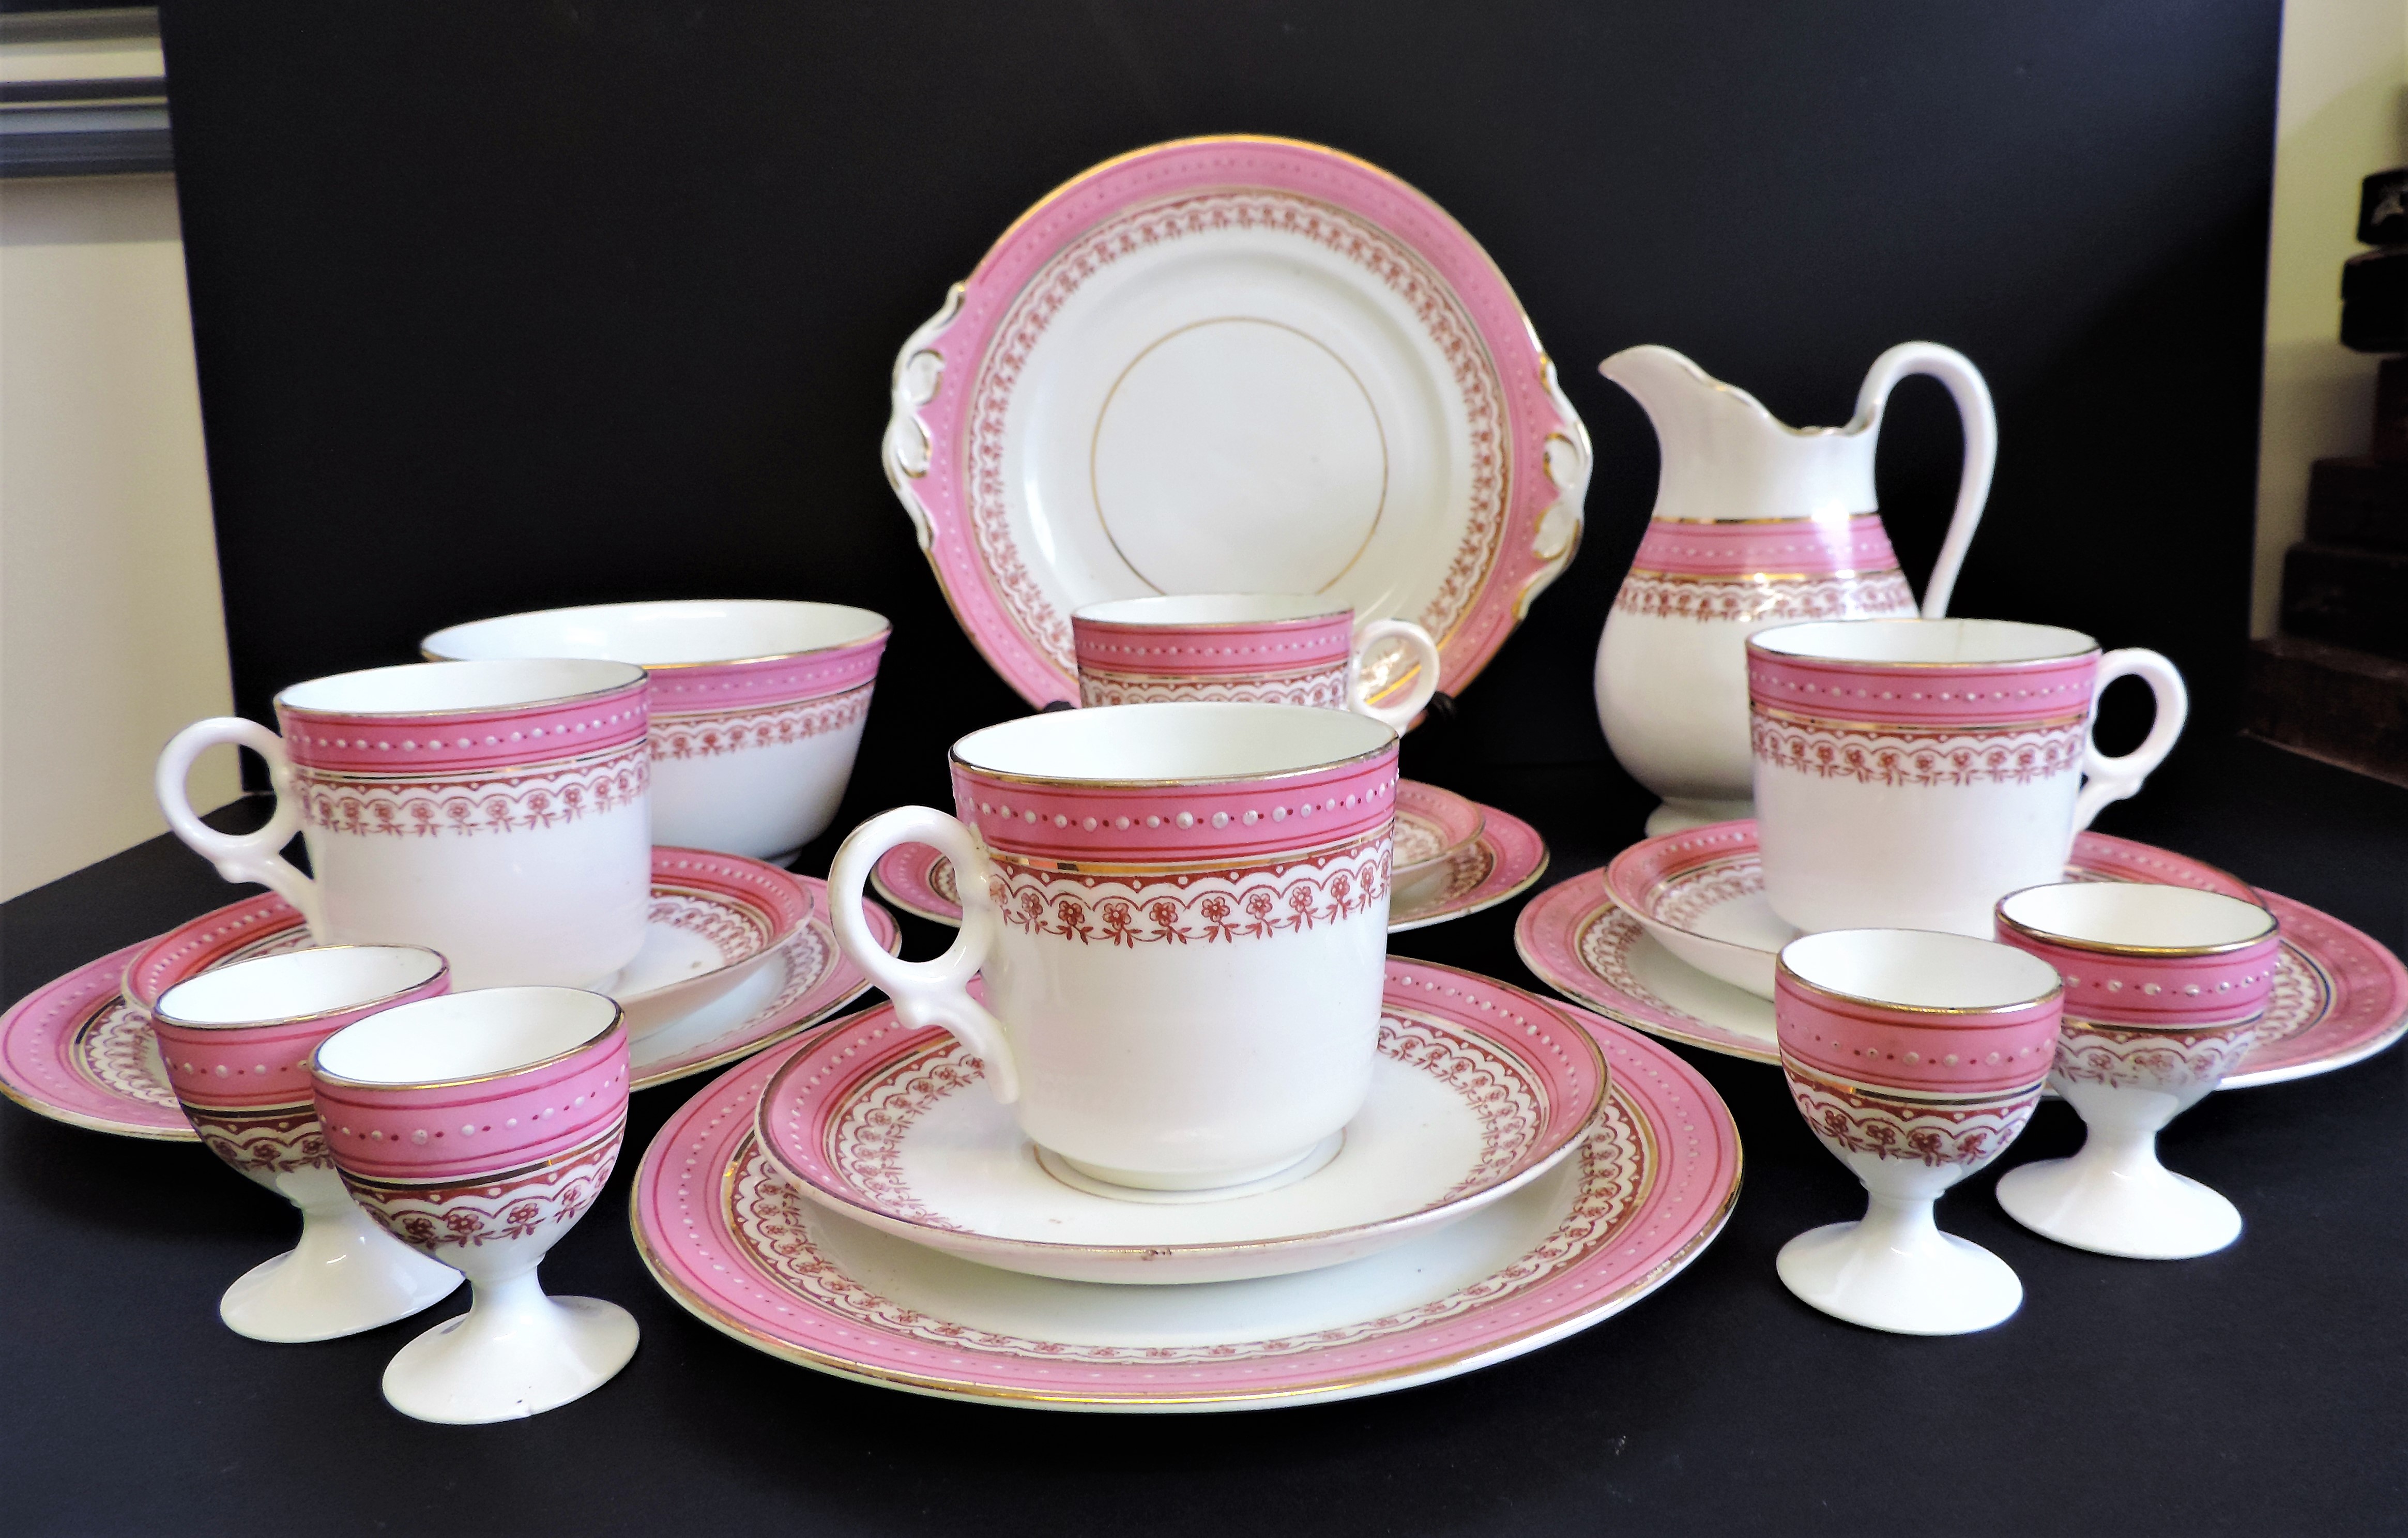 Vintage 19 piece Porcelain Breakfast/Tea Set for 4 People - Image 5 of 24